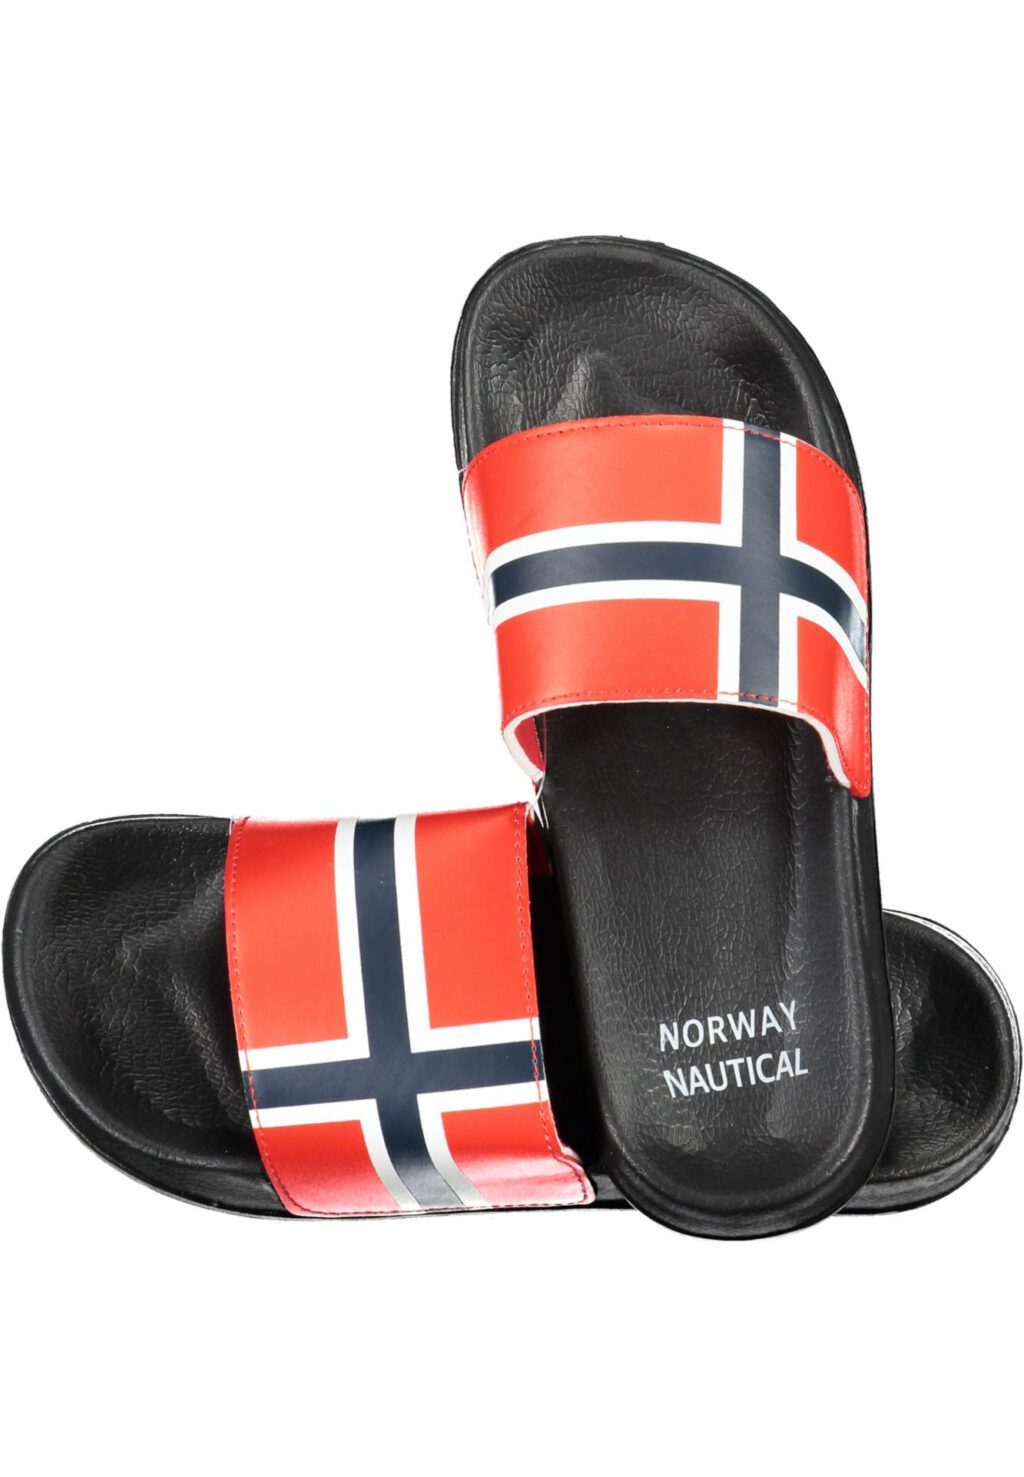 NORWAY 1963 BLACK MEN'S SLIPPER FOOTWEAR 831002_NERO_BLACK